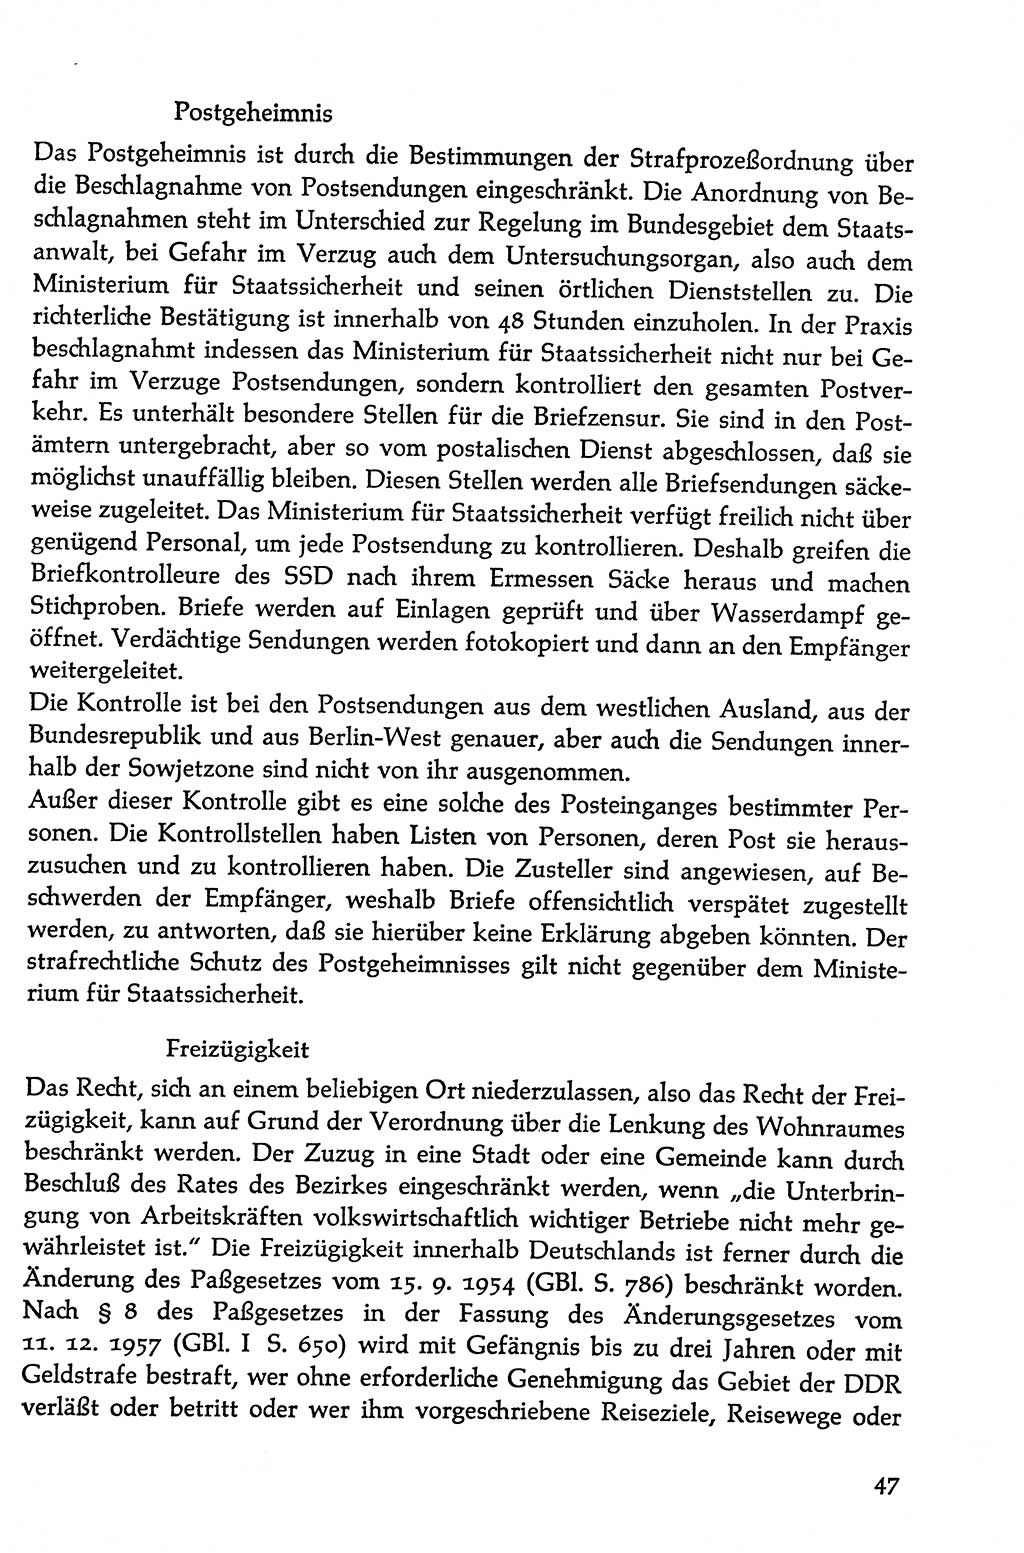 Volksdemokratische Ordnung in Mitteldeutschland [Deutsche Demokratische Republik (DDR)], Texte zur verfassungsrechtlichen Situation 1963, Seite 47 (Volksdem. Ordn. Md. DDR 1963, S. 47)